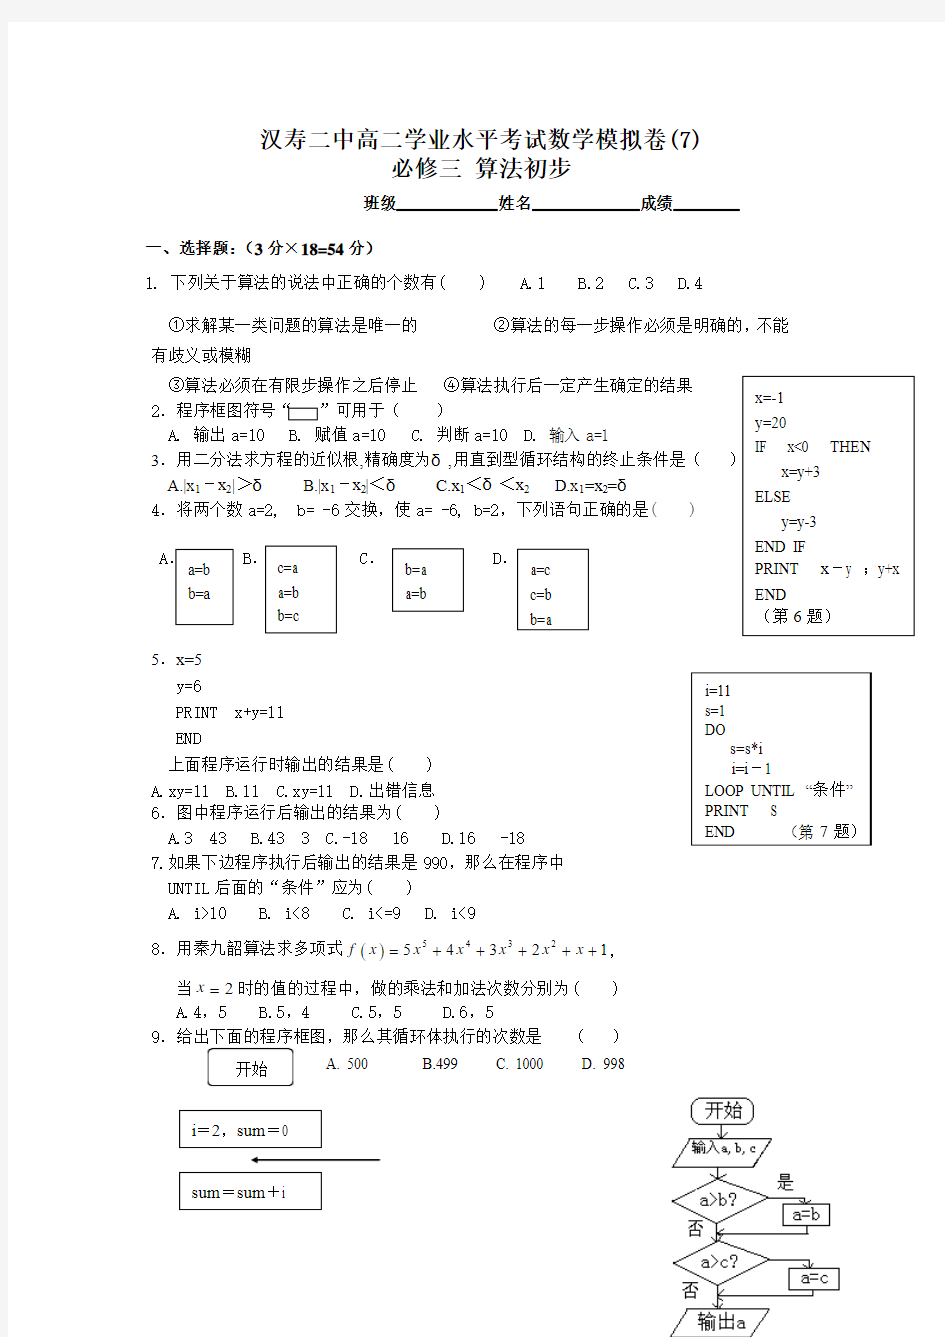 汉寿二中高二学业水平考试测试卷(7)